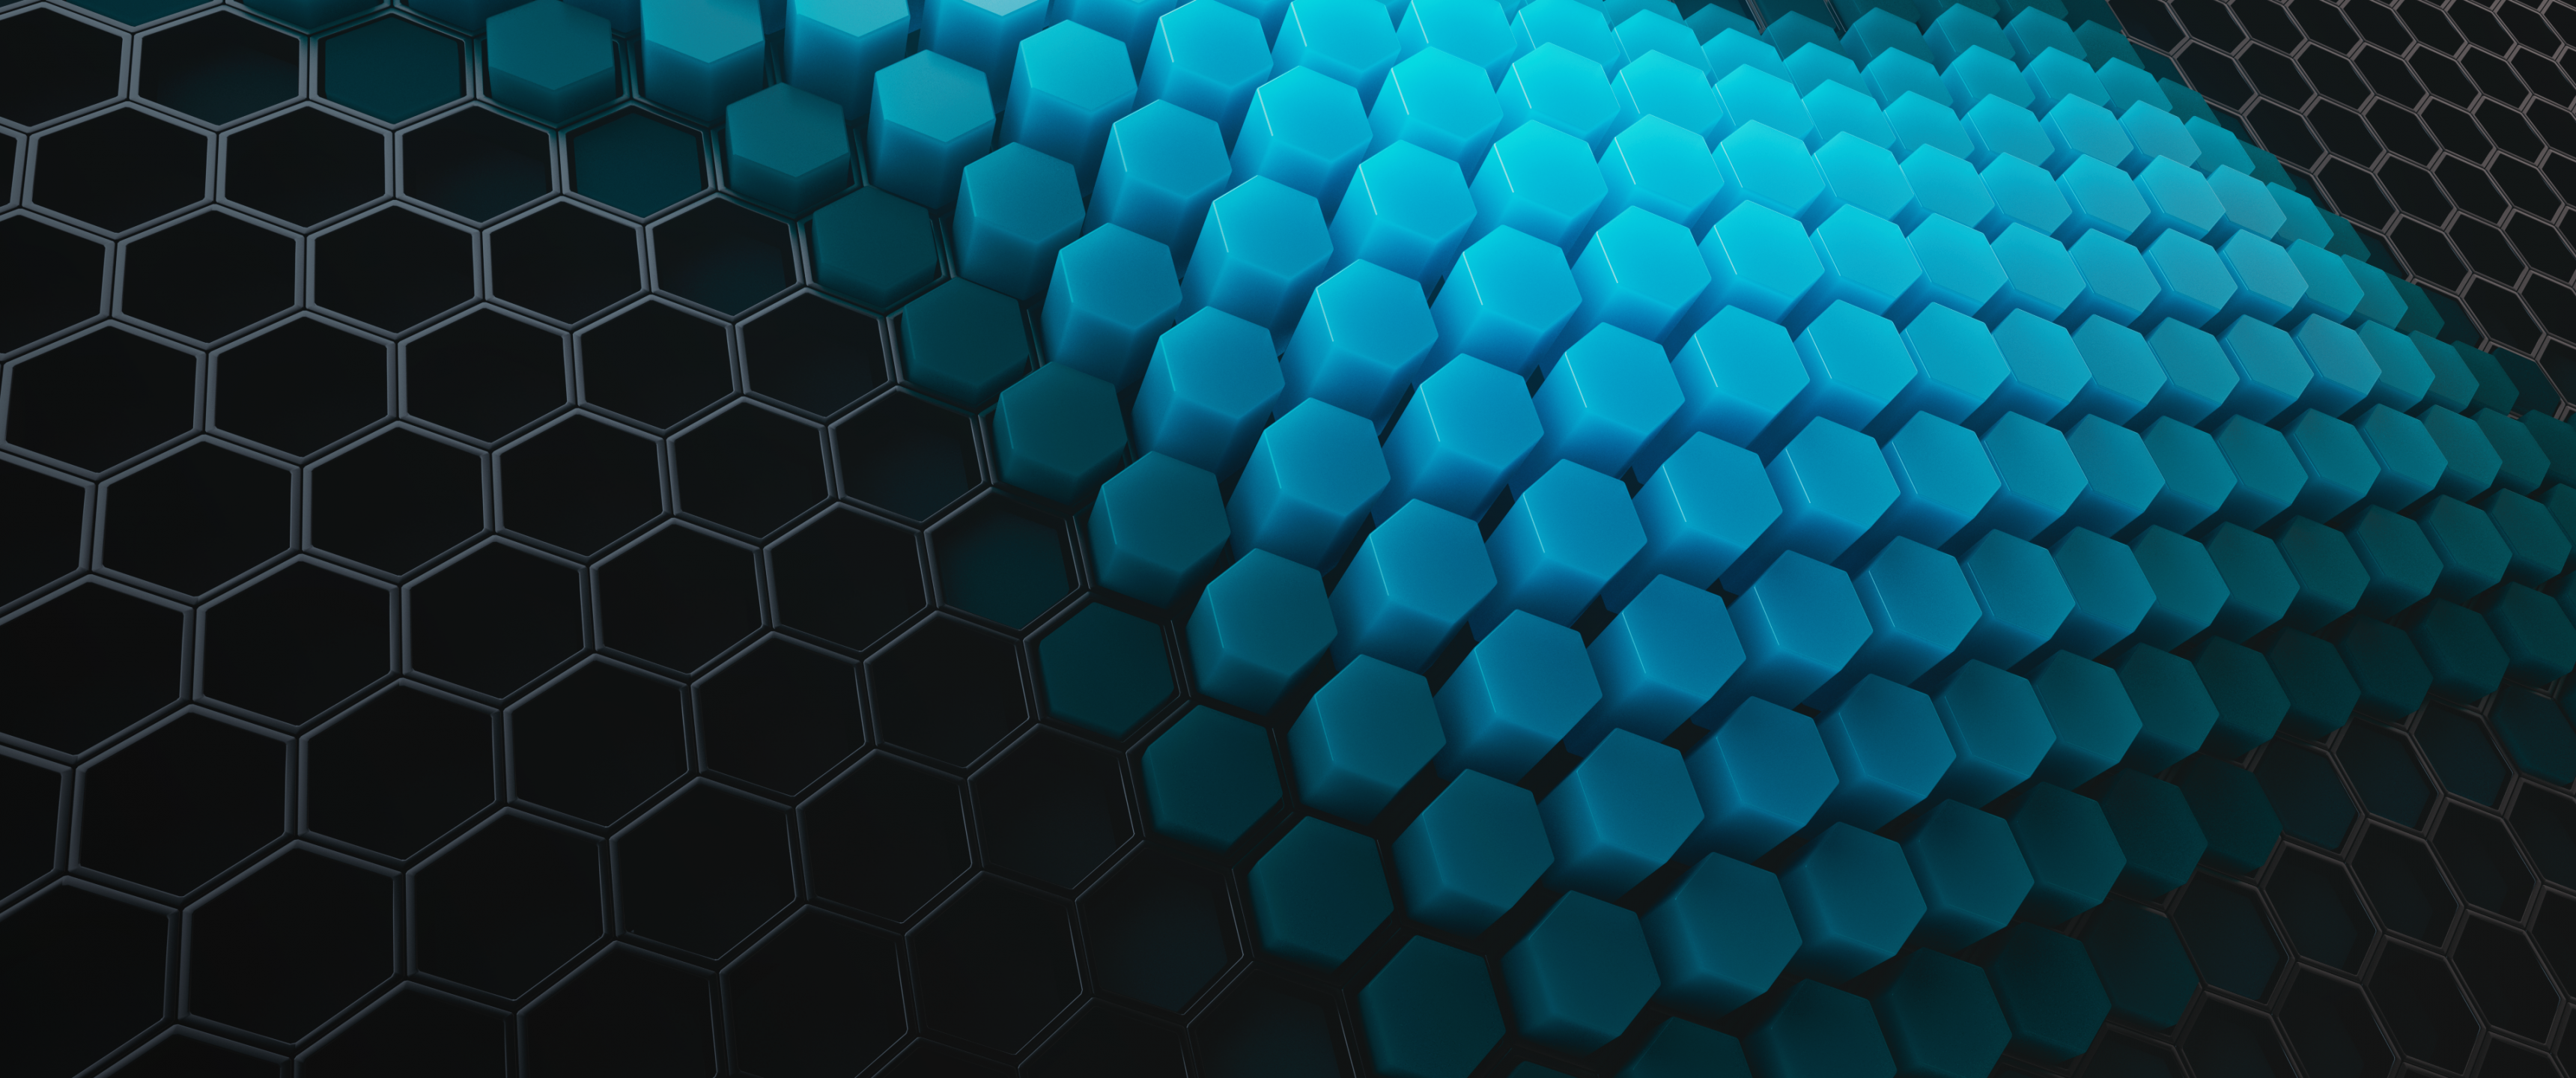 Hexagons Wallpaper 4K, Patterns, Abstract, #2288